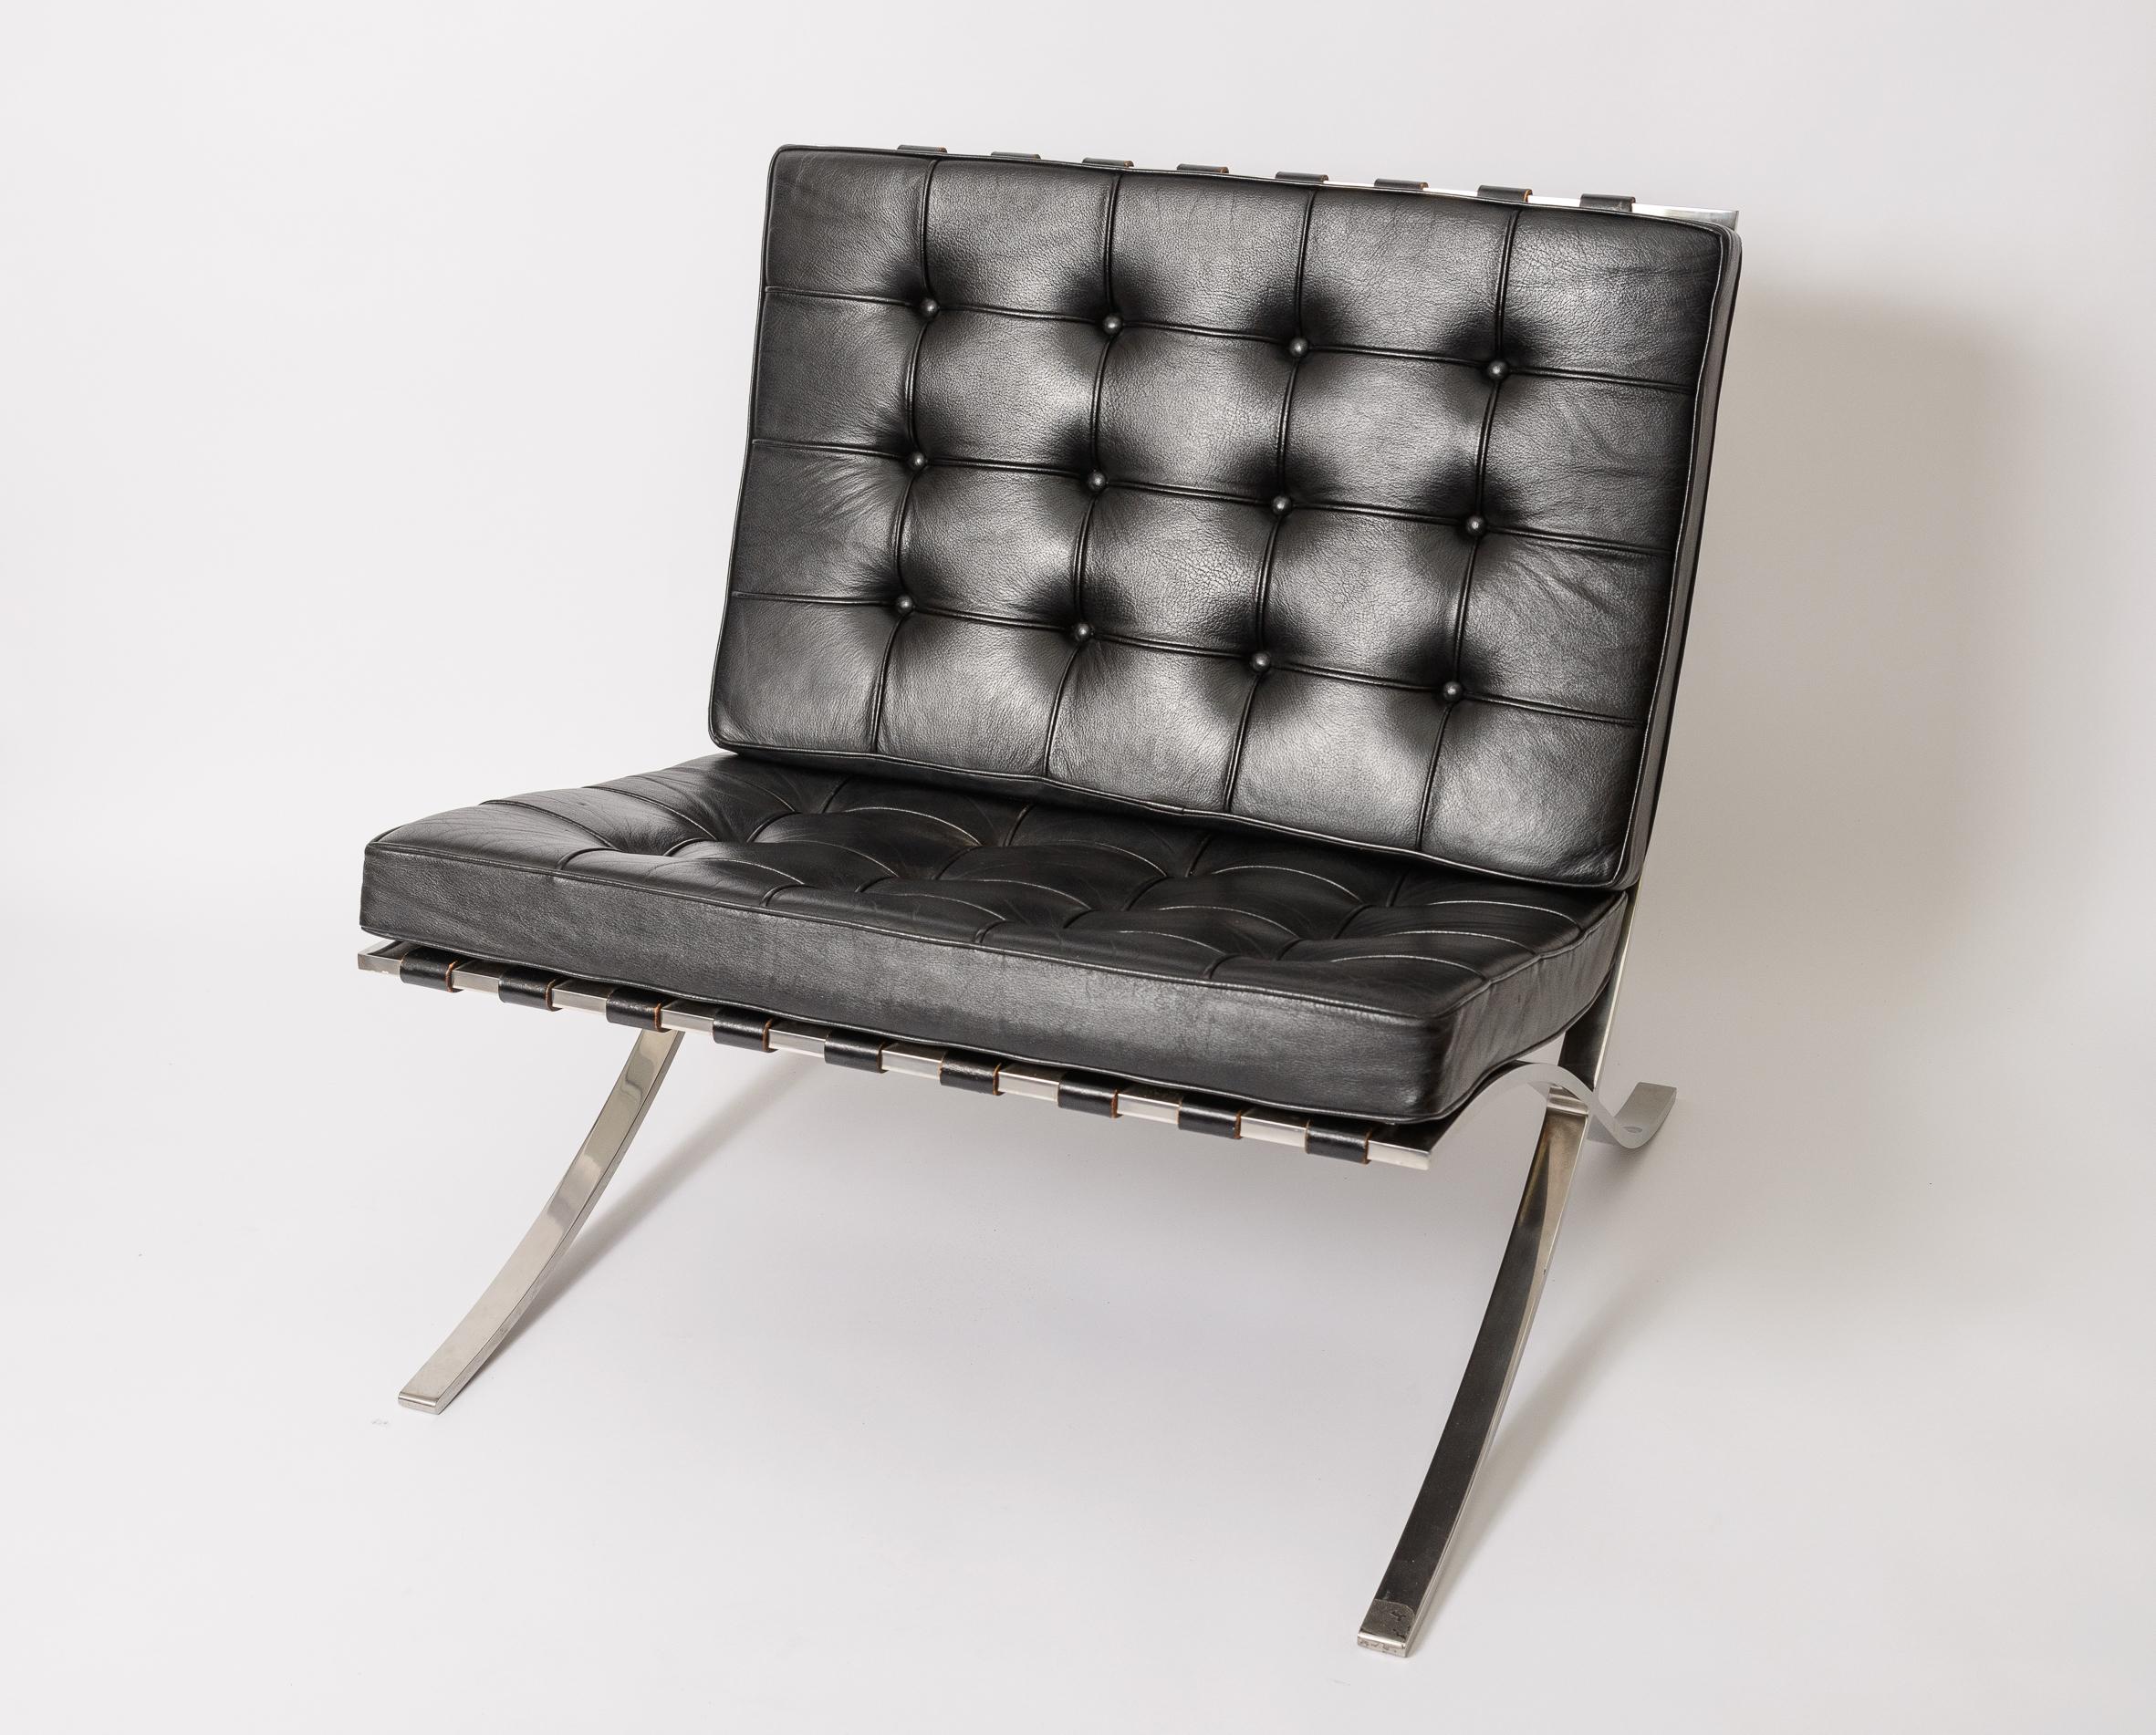 Ein schönes originales Paar Mies Van Der Rohe Barcelona Stühle
Original Vollnarbenledersitze und -gurte
Sauberer polierter Stahlrahmen
Original Stoff Knoll Label